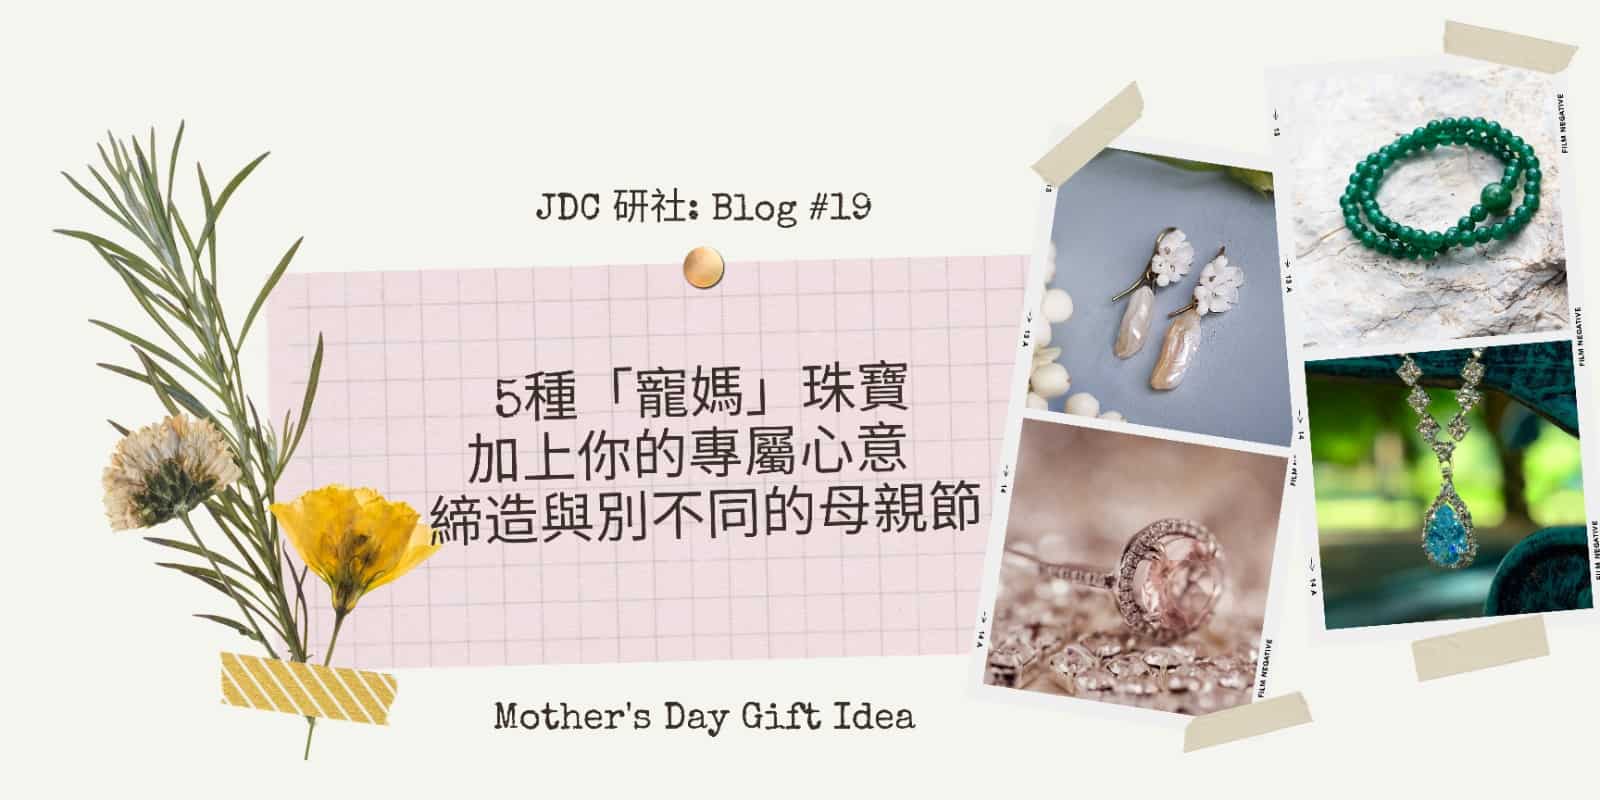 5種「寵媽」珠寶加上你的專屬心意  締造與別不同的母親節